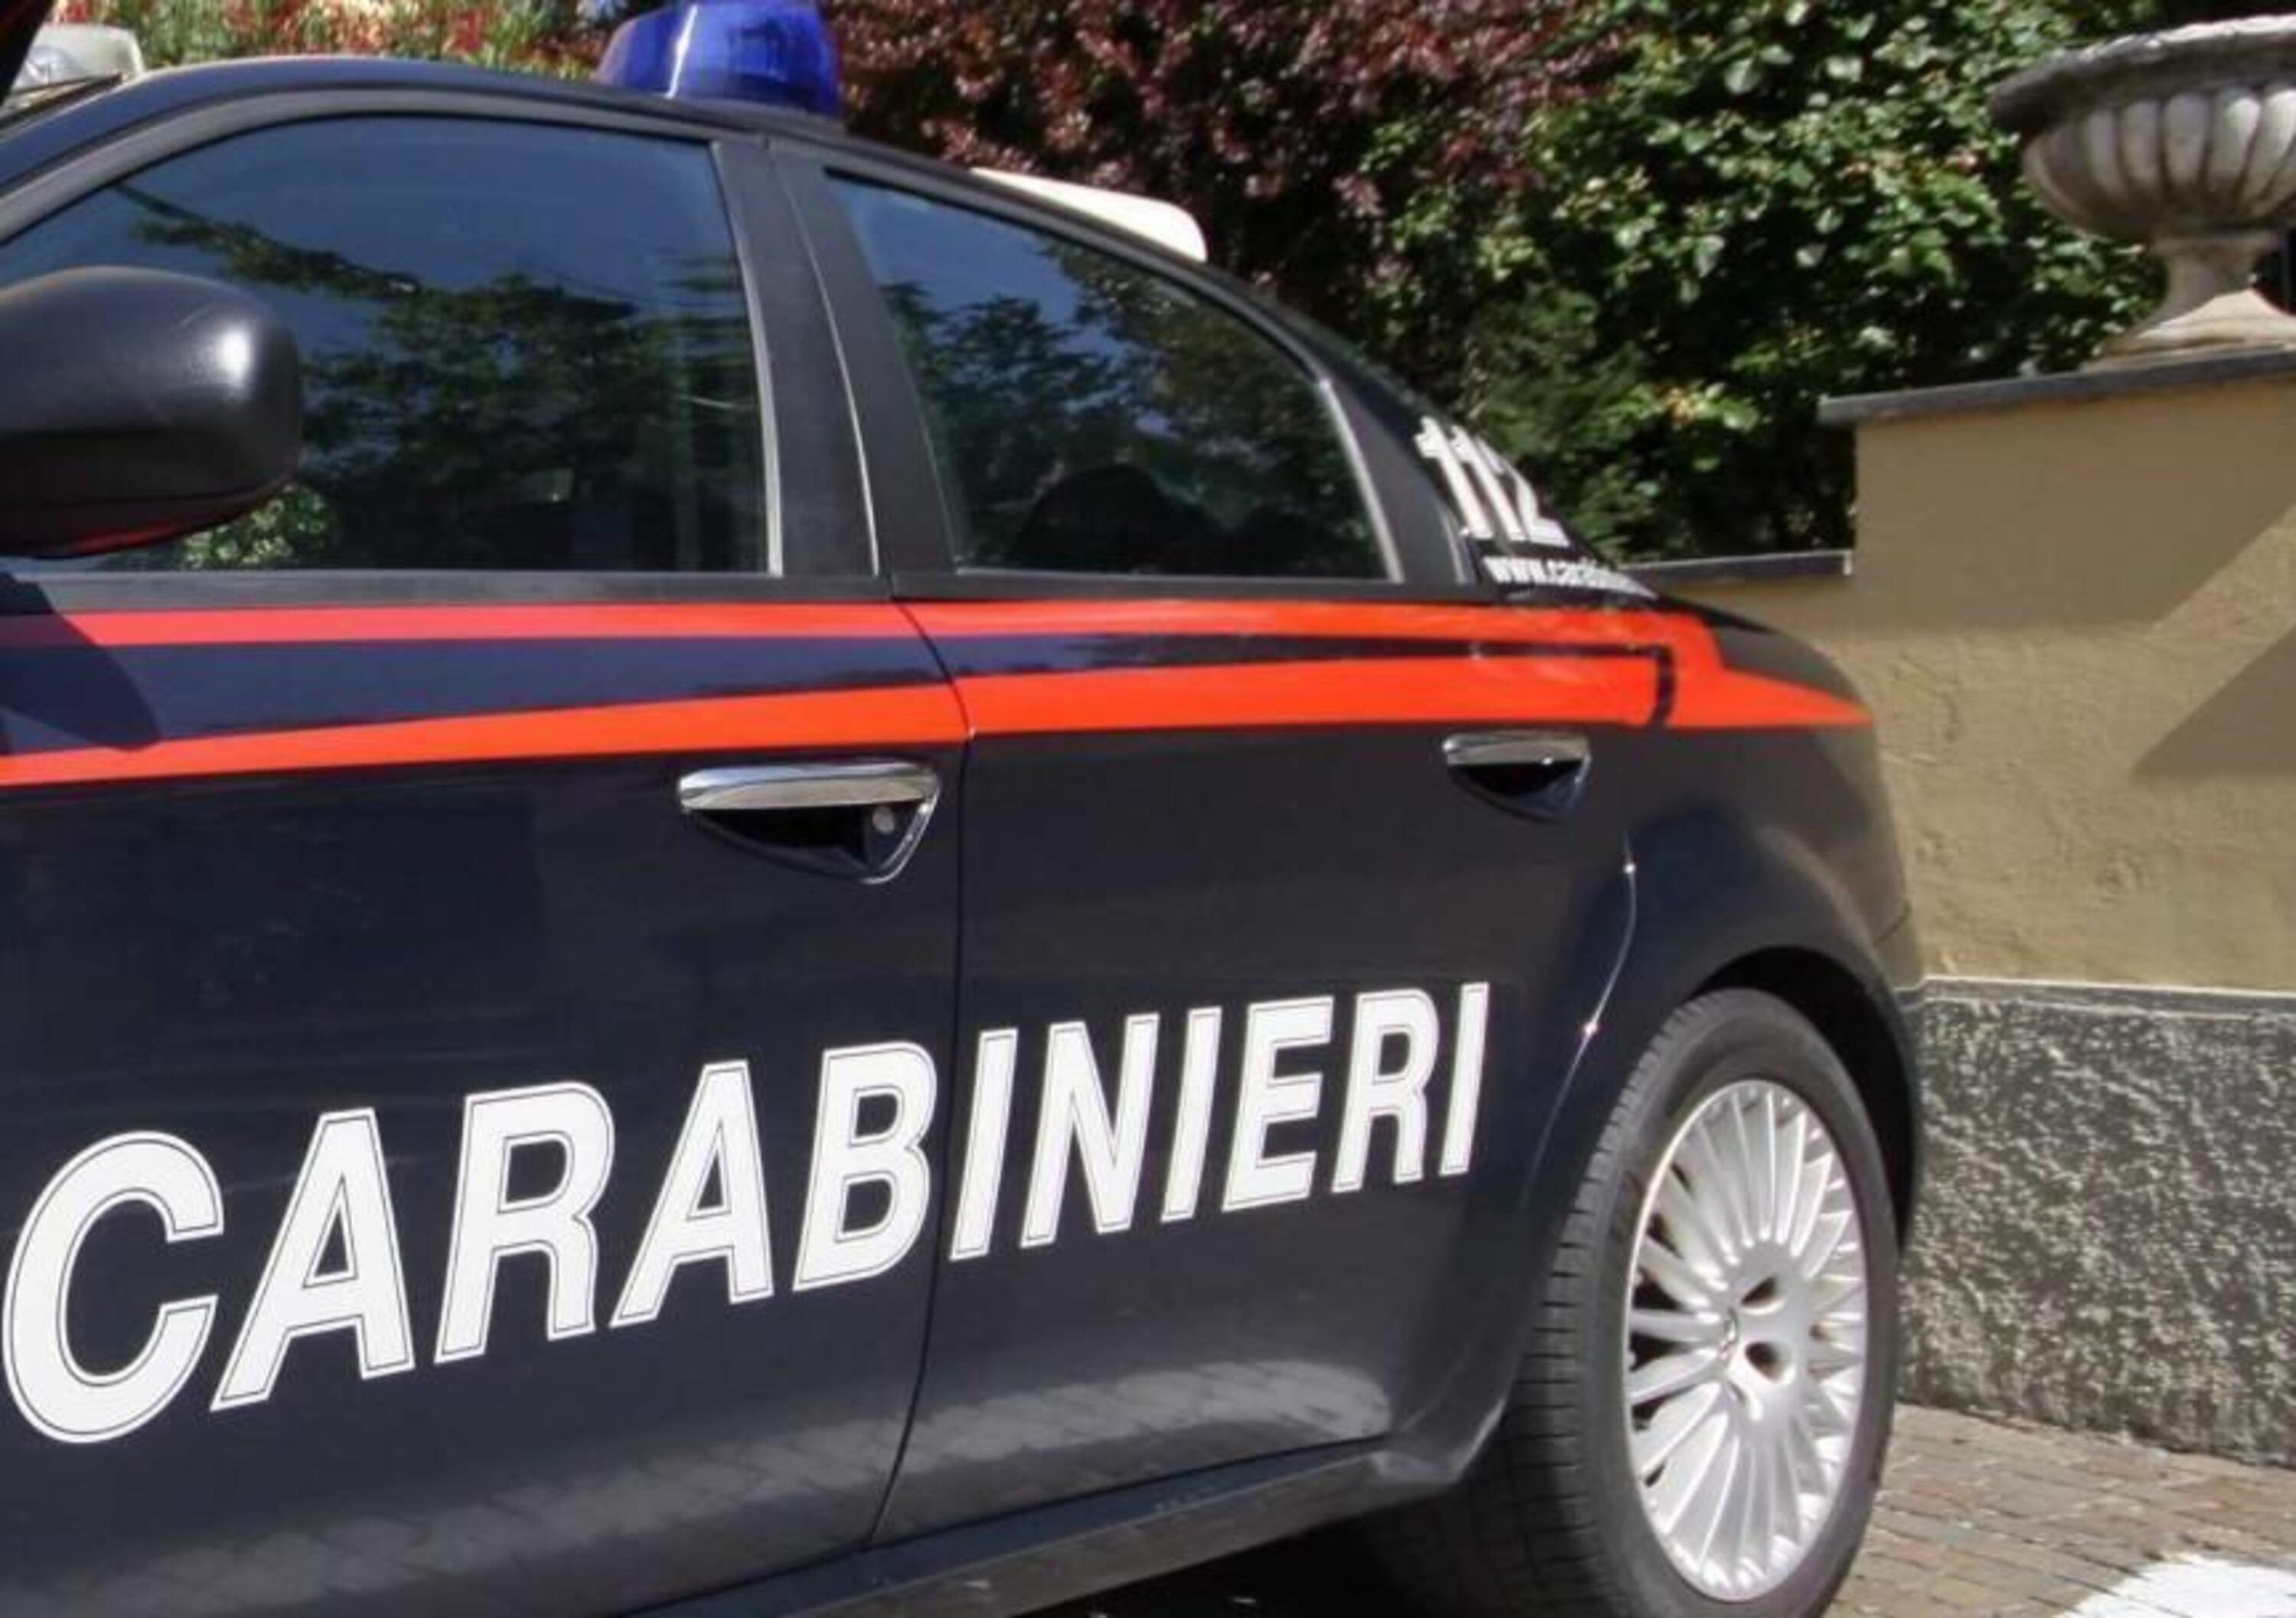 Treviso: in giro con lo scooter rubato, 15enne denunciato